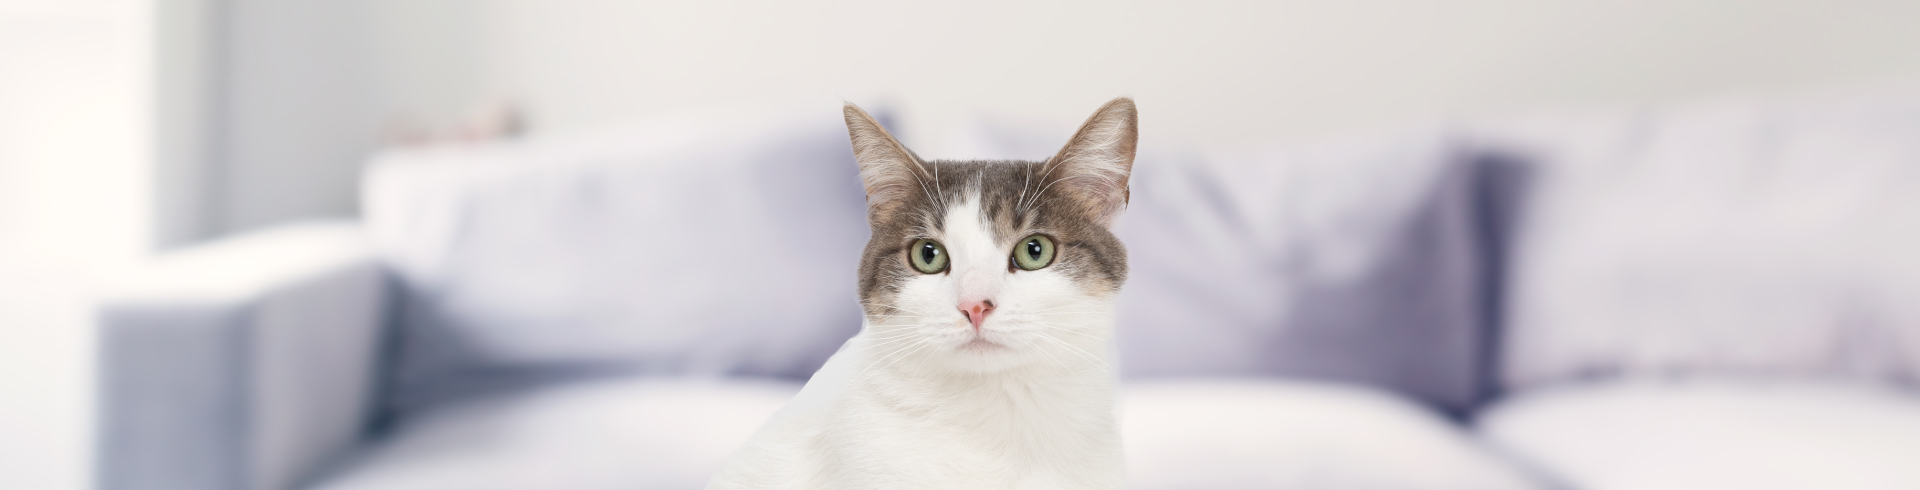 10 datos curiosos que no conocías de los gatos - Petys